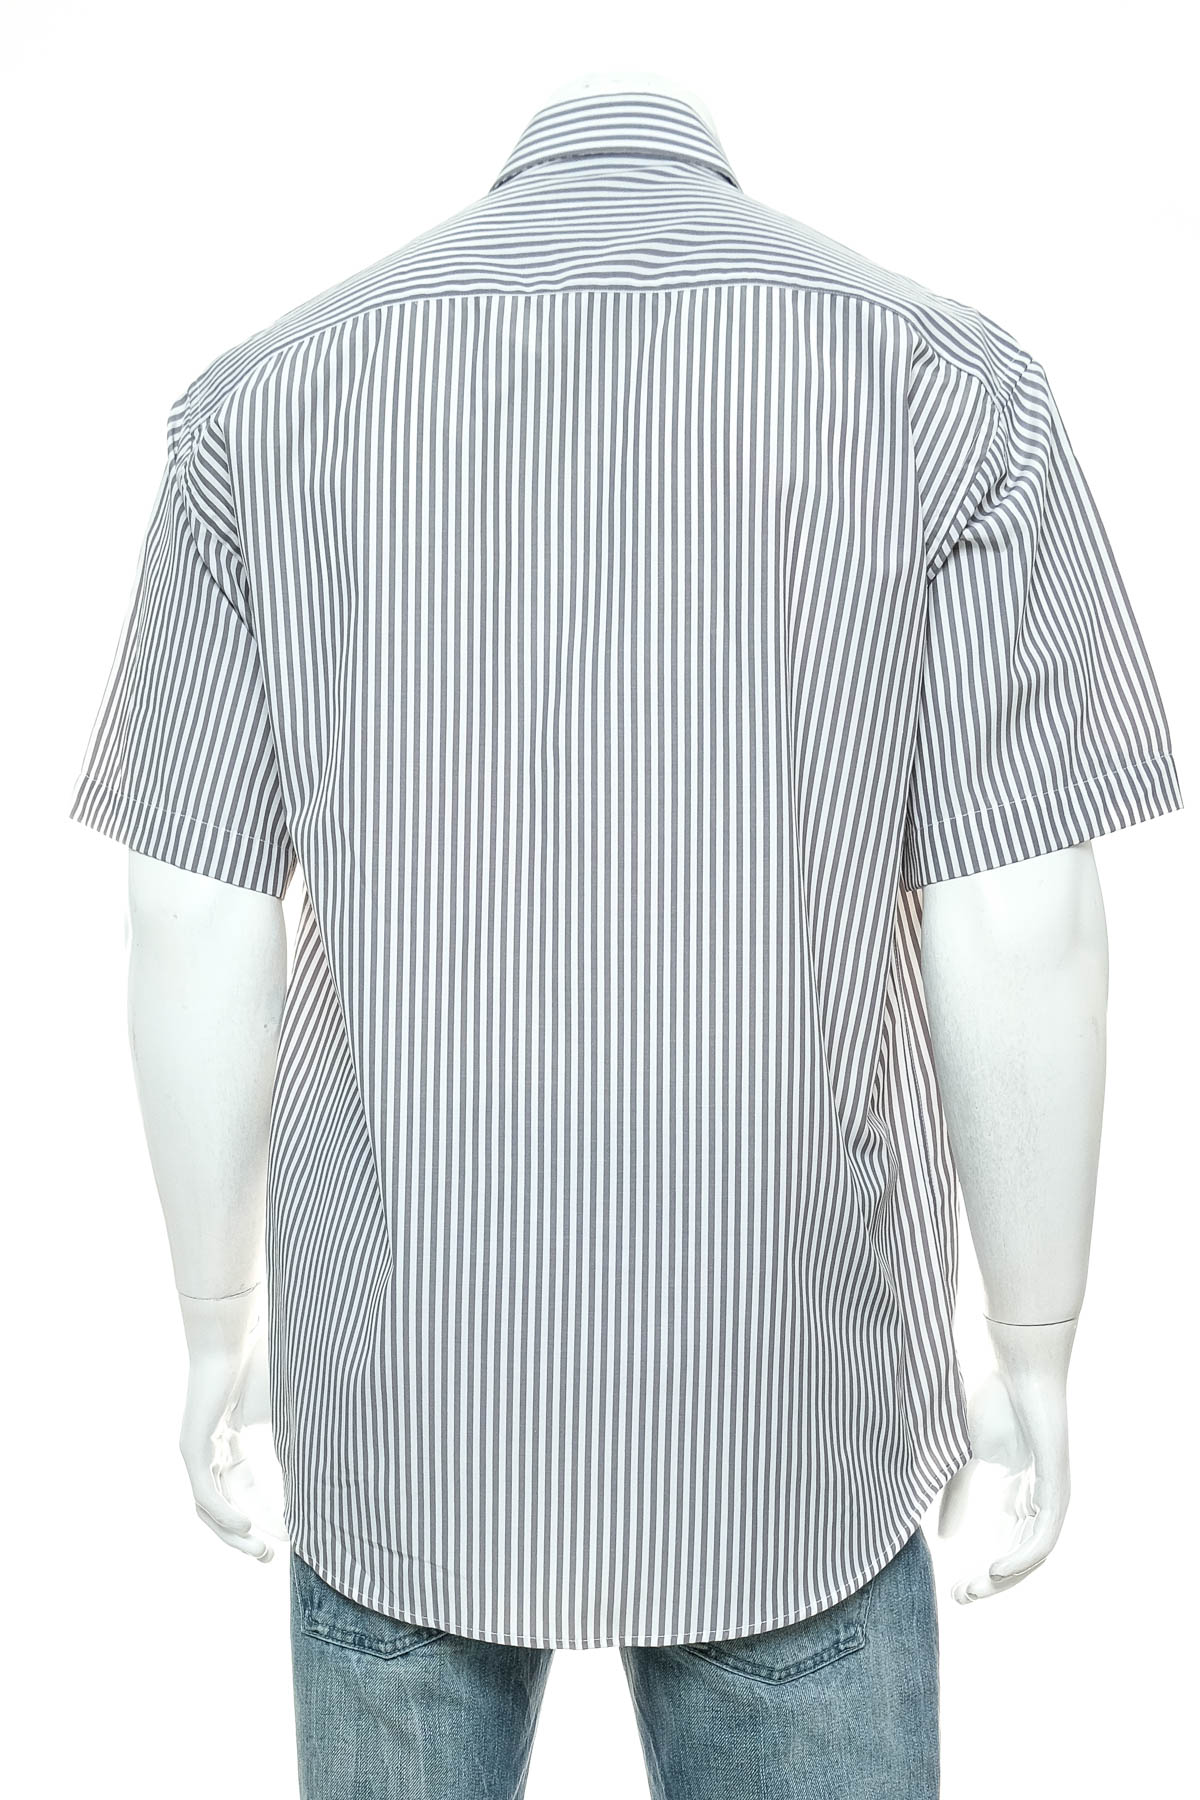 Ανδρικό πουκάμισο - Rengima - 1